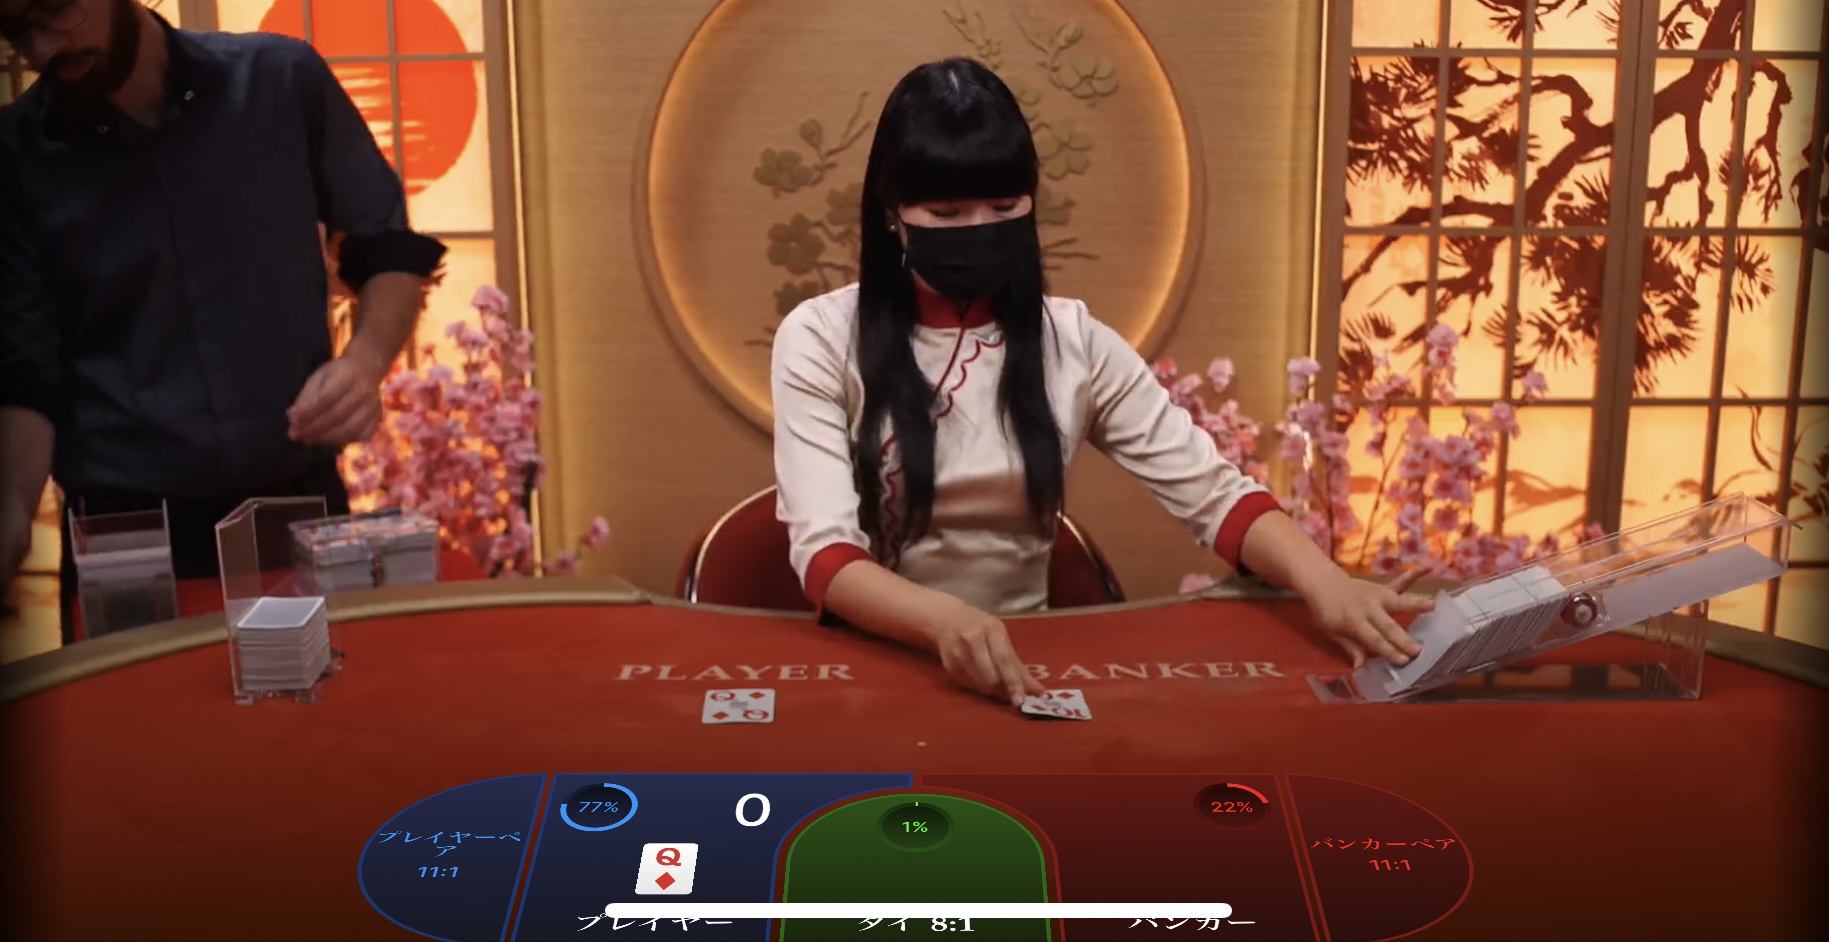 日本でおすすめのオンラインカジノ・スポーツベットはリリベットカジノ